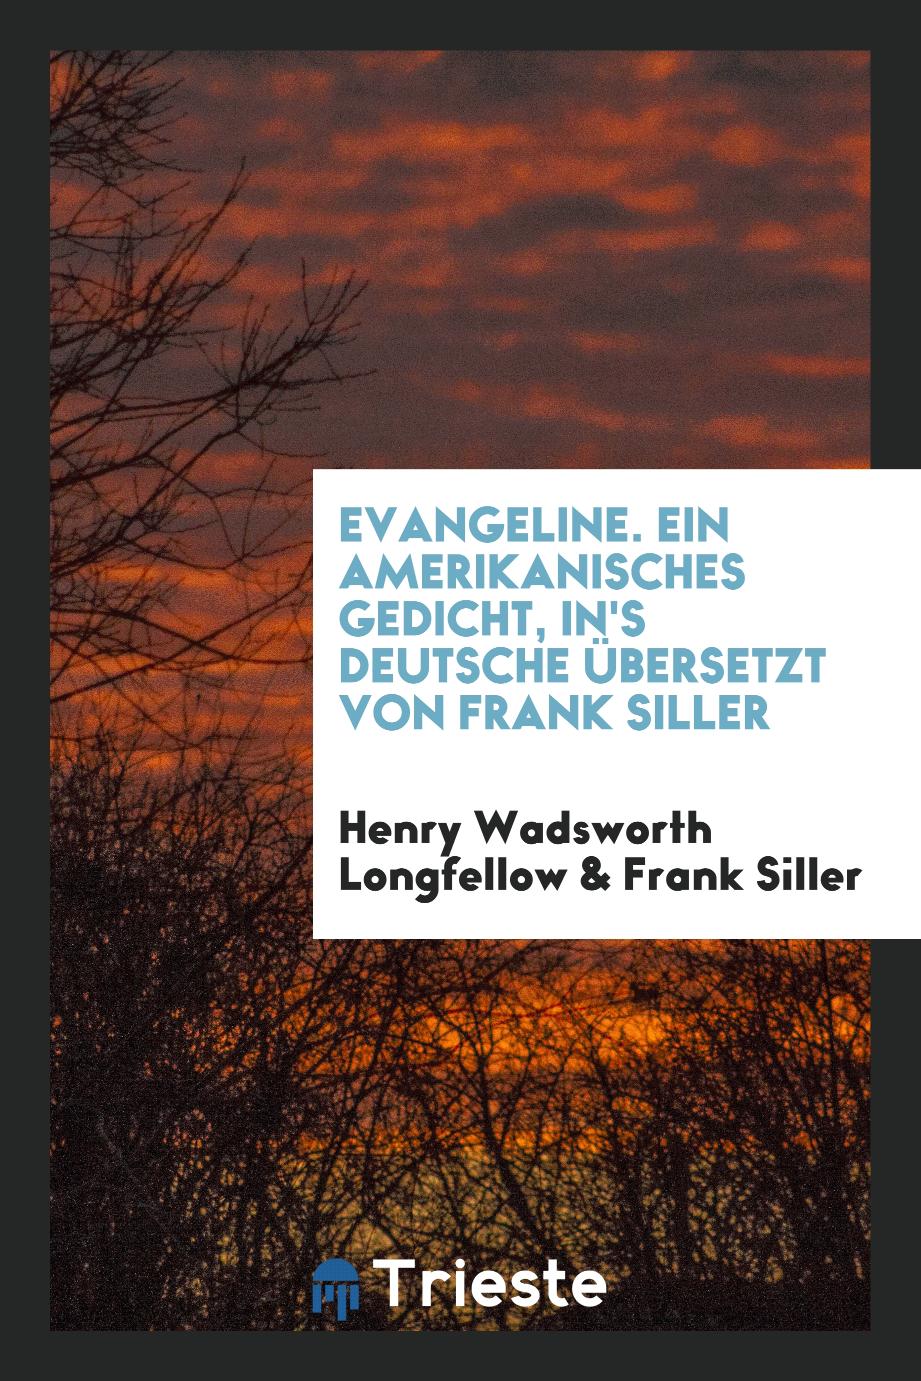 Evangeline. Ein Amerikanisches Gedicht, In's Deutsche Übersetzt von Frank Siller